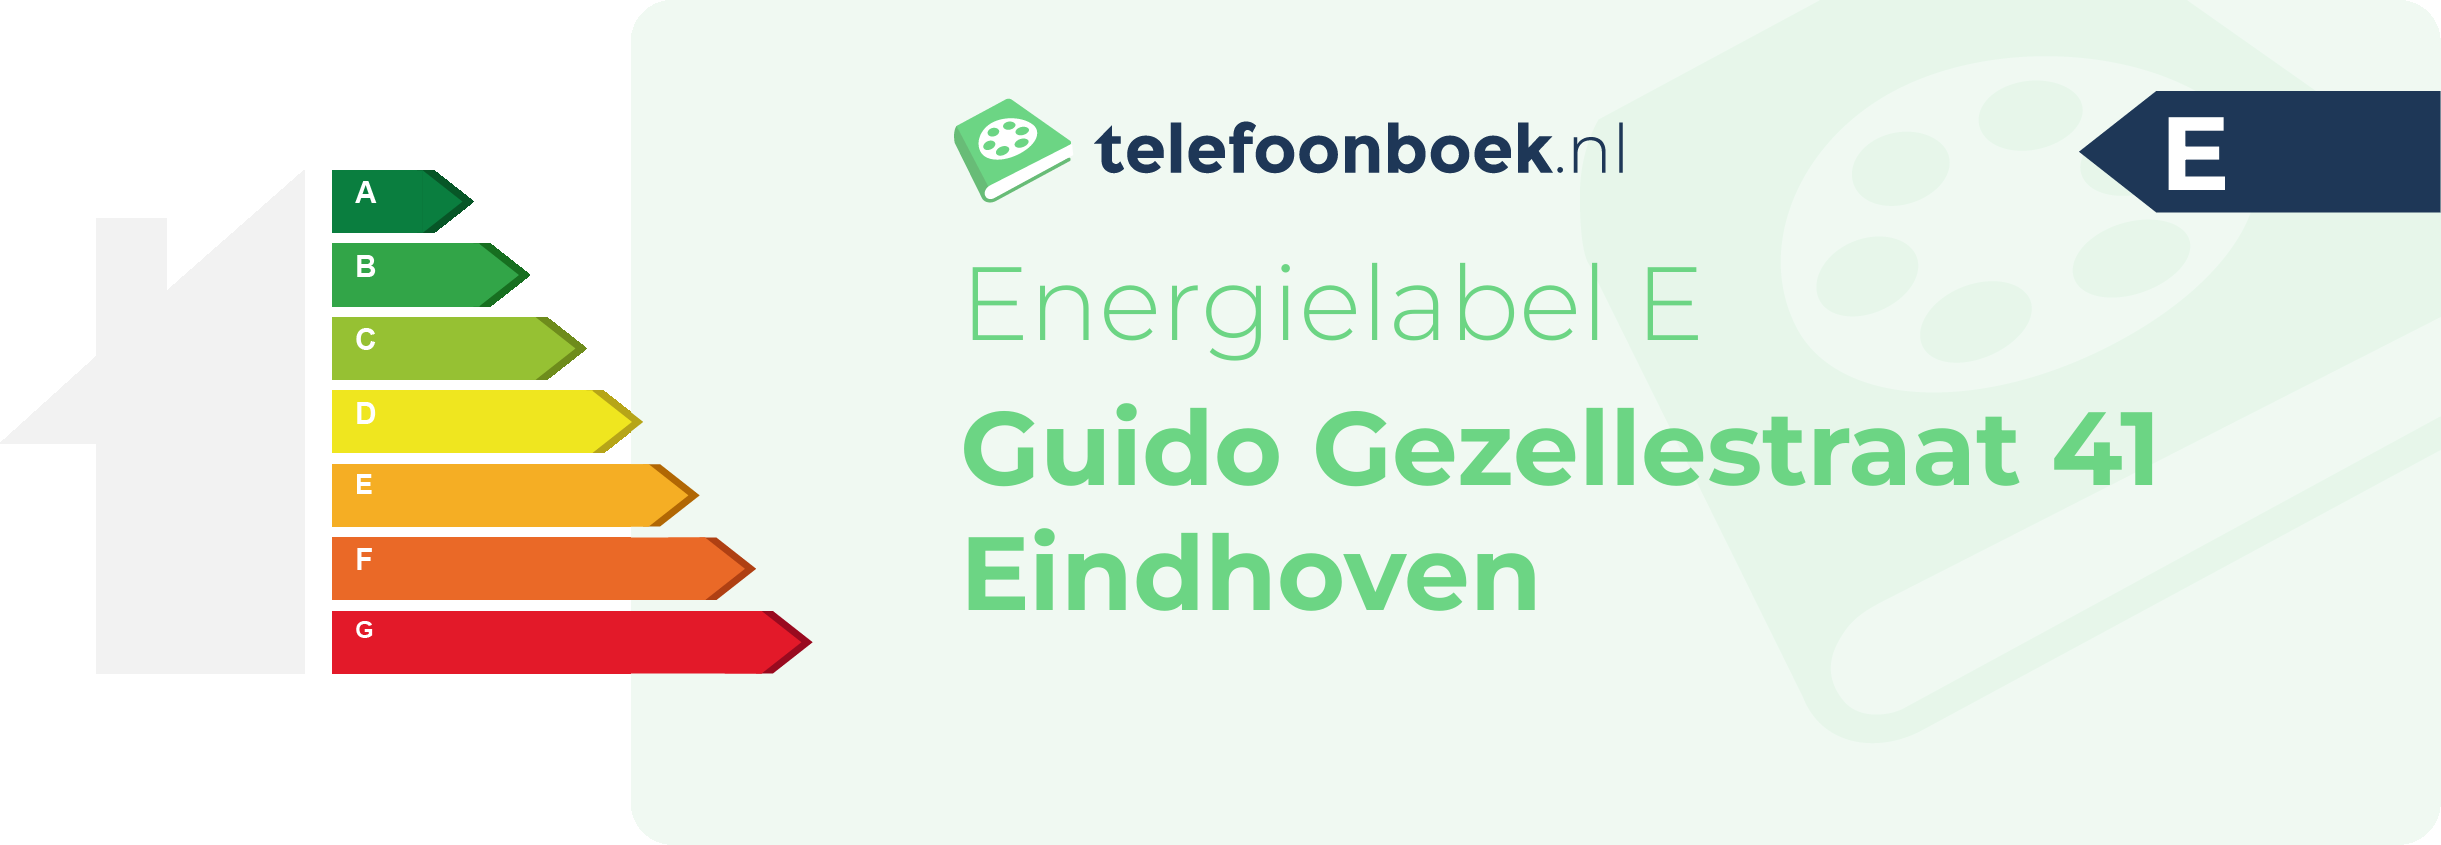 Energielabel Guido Gezellestraat 41 Eindhoven